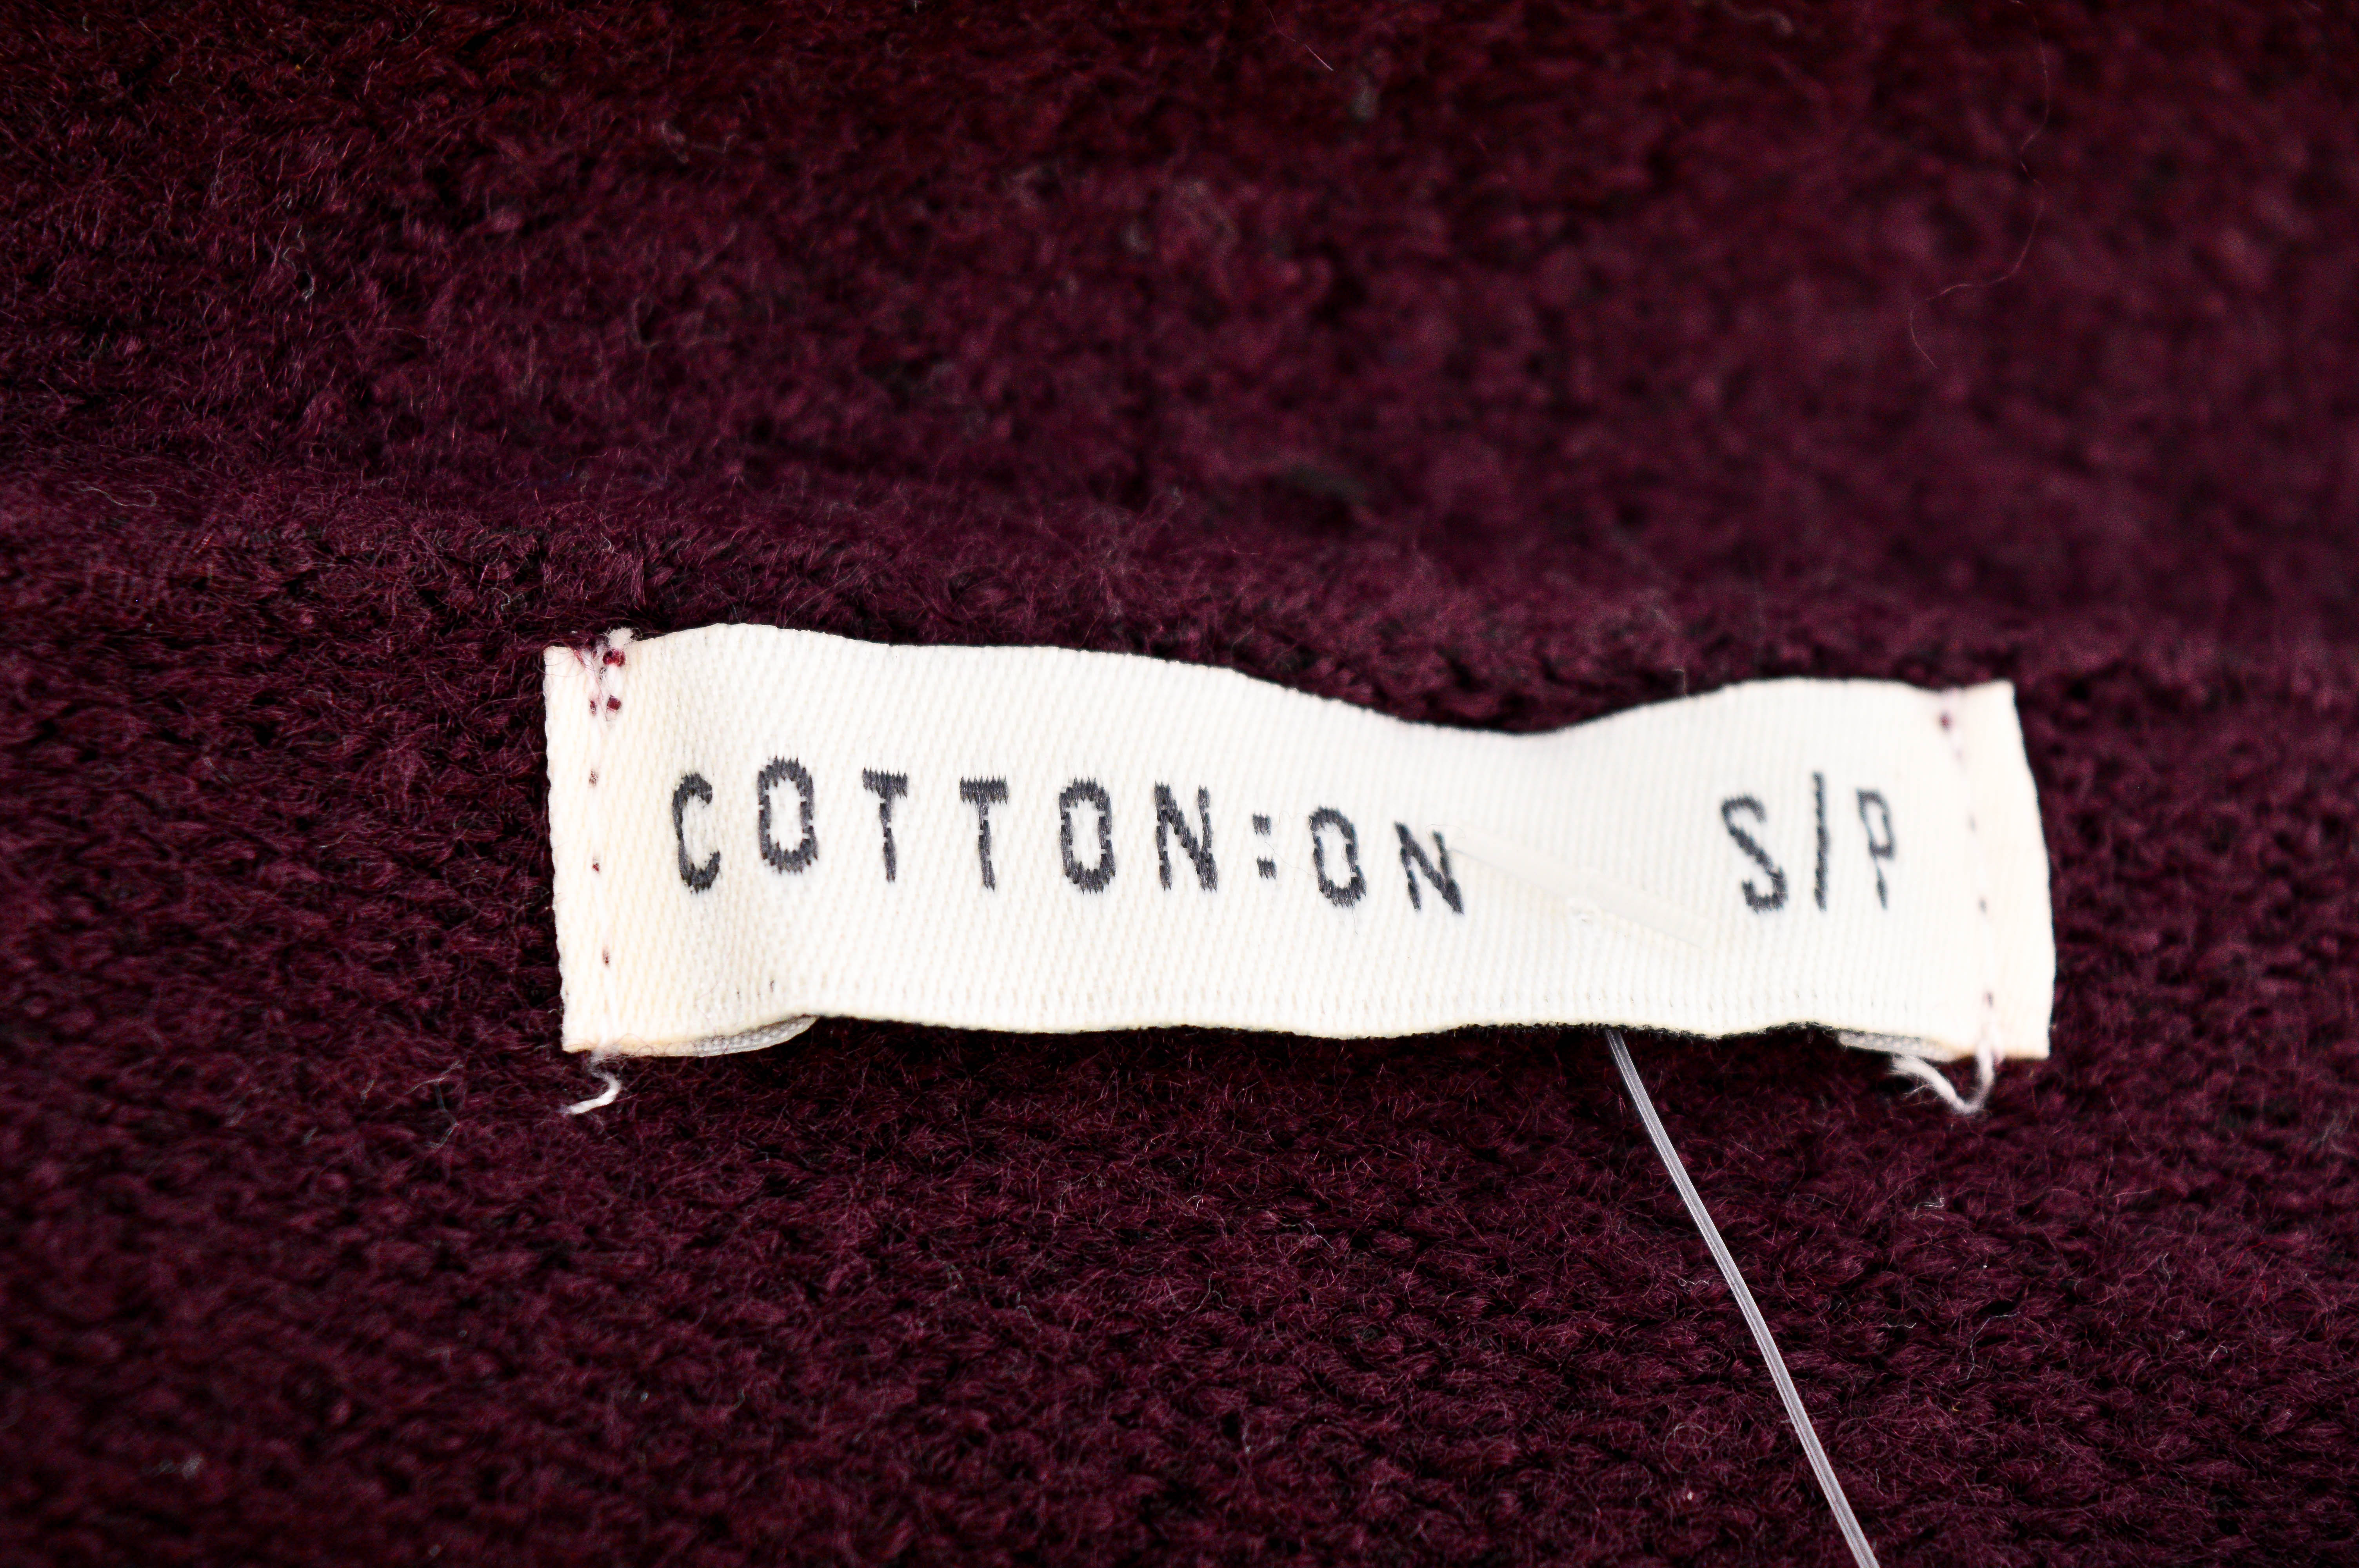 Cardigan / Jachetă de damă - COTTON:ON - 2